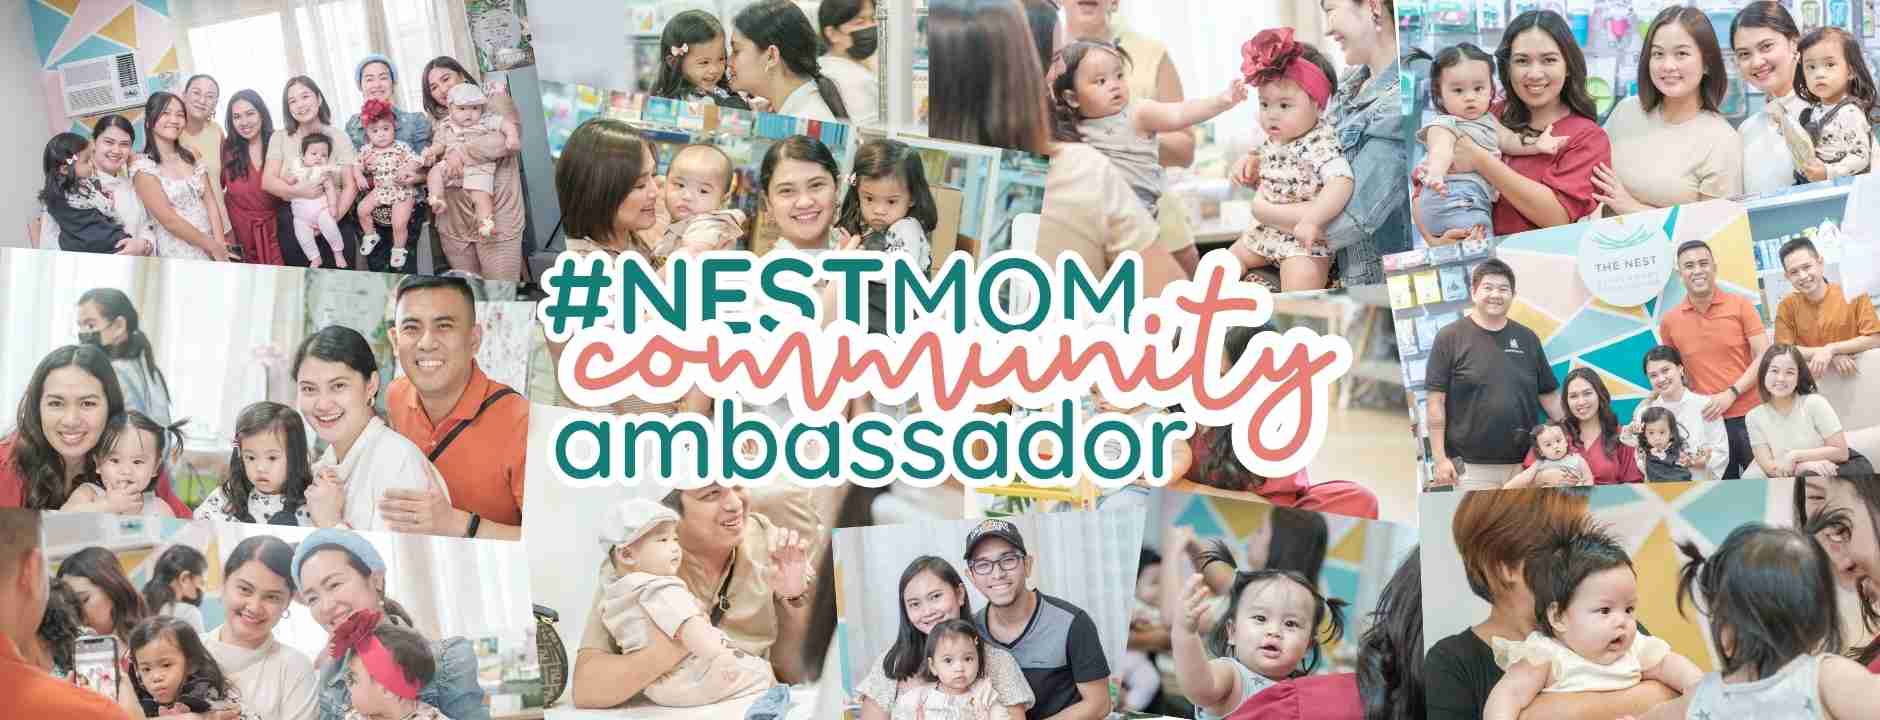 Nestmom Community Ambassador - The Nest Attachment Parenting Hub Affiliate Program